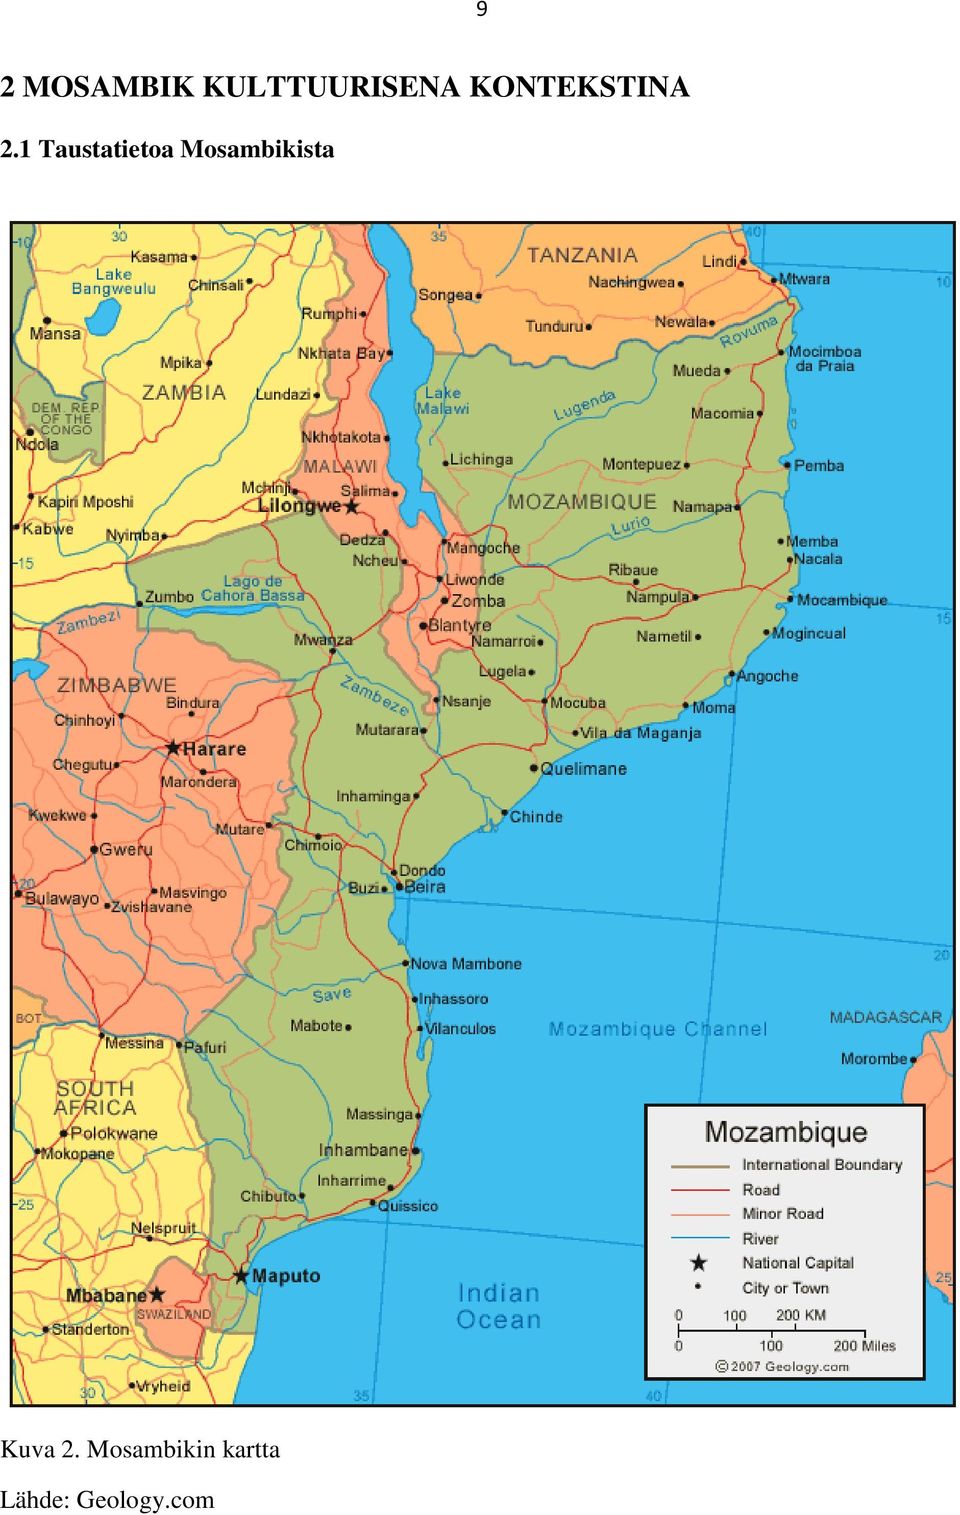 1 Taustatietoa Mosambikista